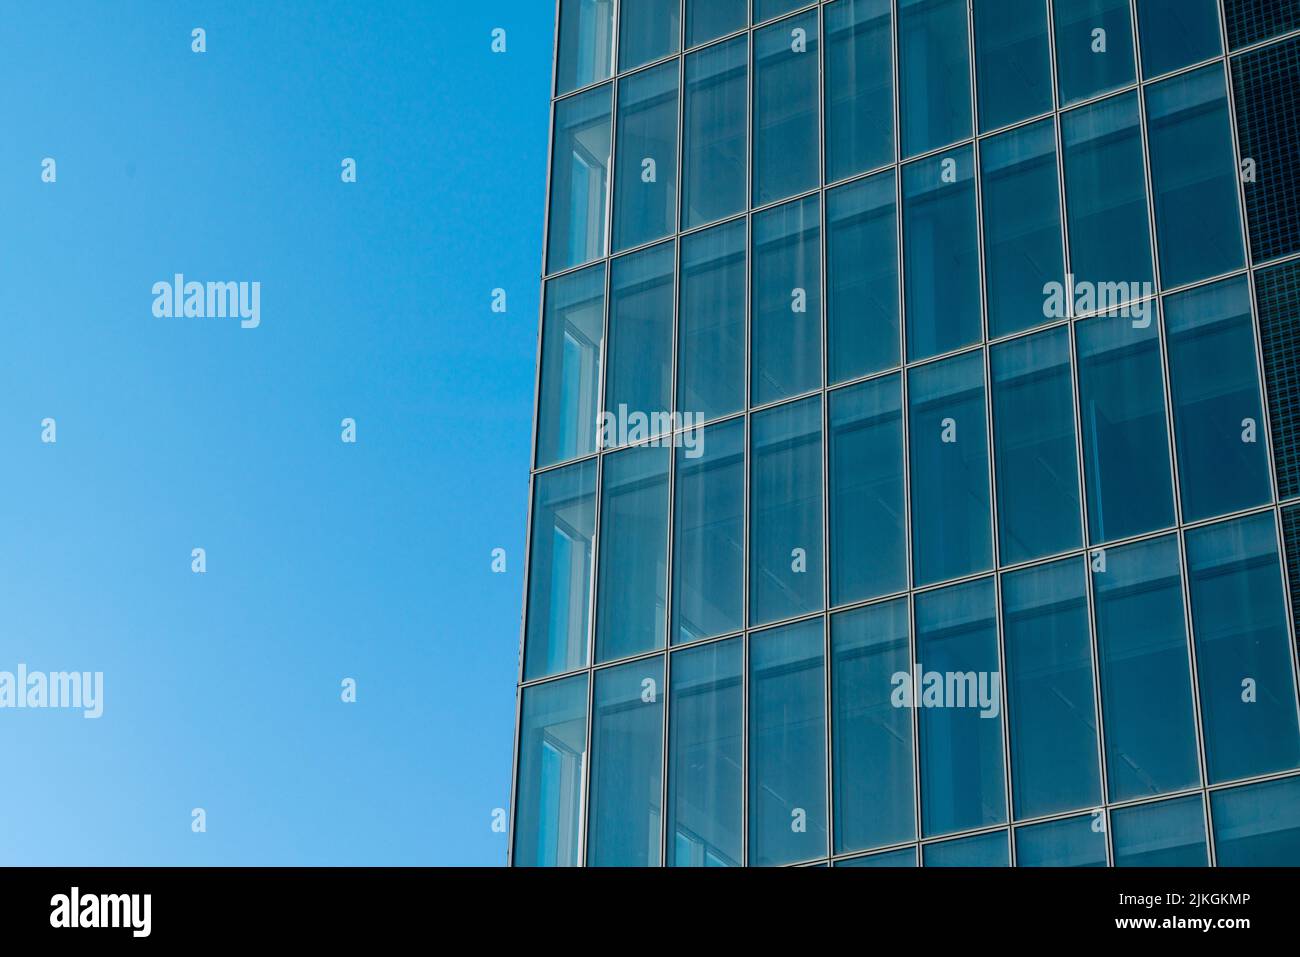 Besonderer Wolkenkratzer: Architektur eines Gebäudes mit einer komplett verglasten Fassade, mit Elementen aus Fenstern und durchgehender Verglasung. Stockfoto